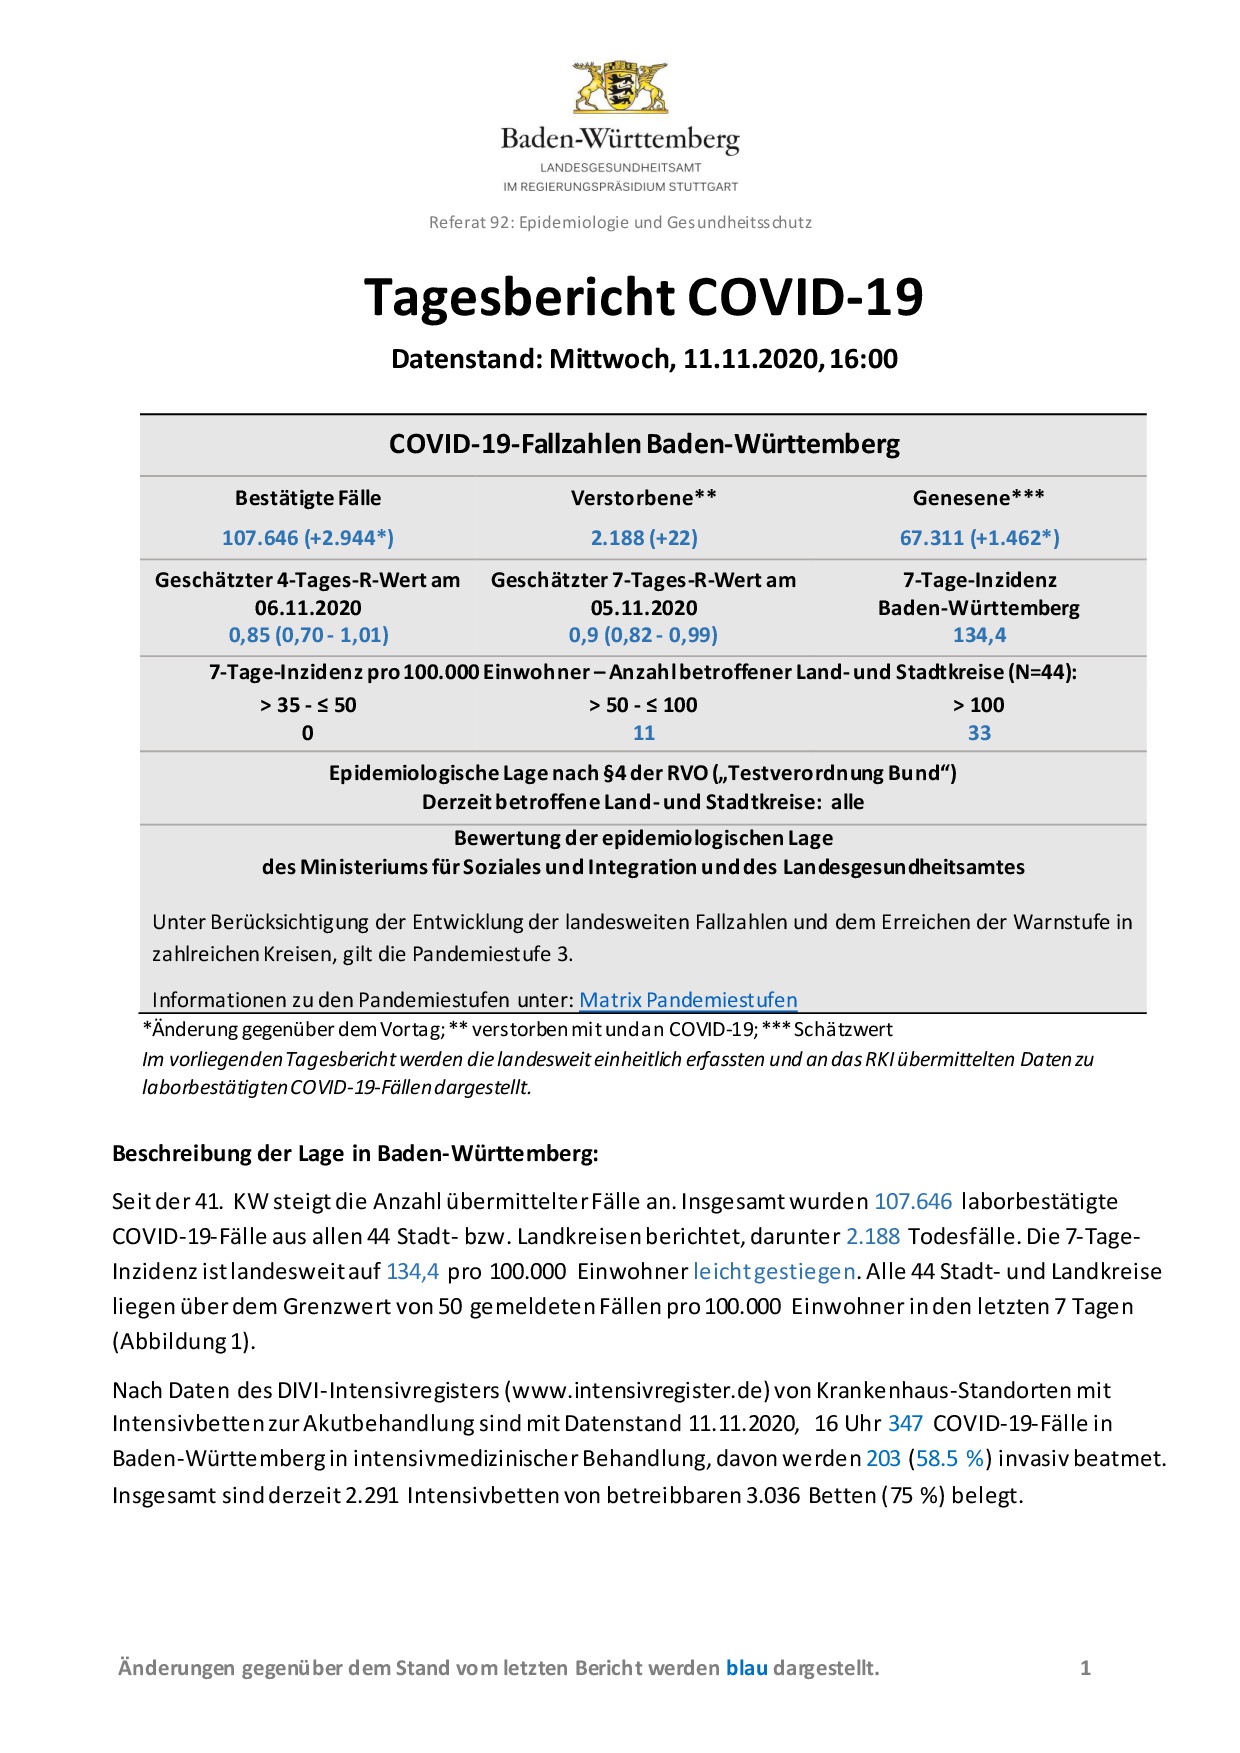 COVID-19 Tagesbericht (11.11.2020) des Landesgesundheitsamts Baden-Württemberg – (ausführlicher)